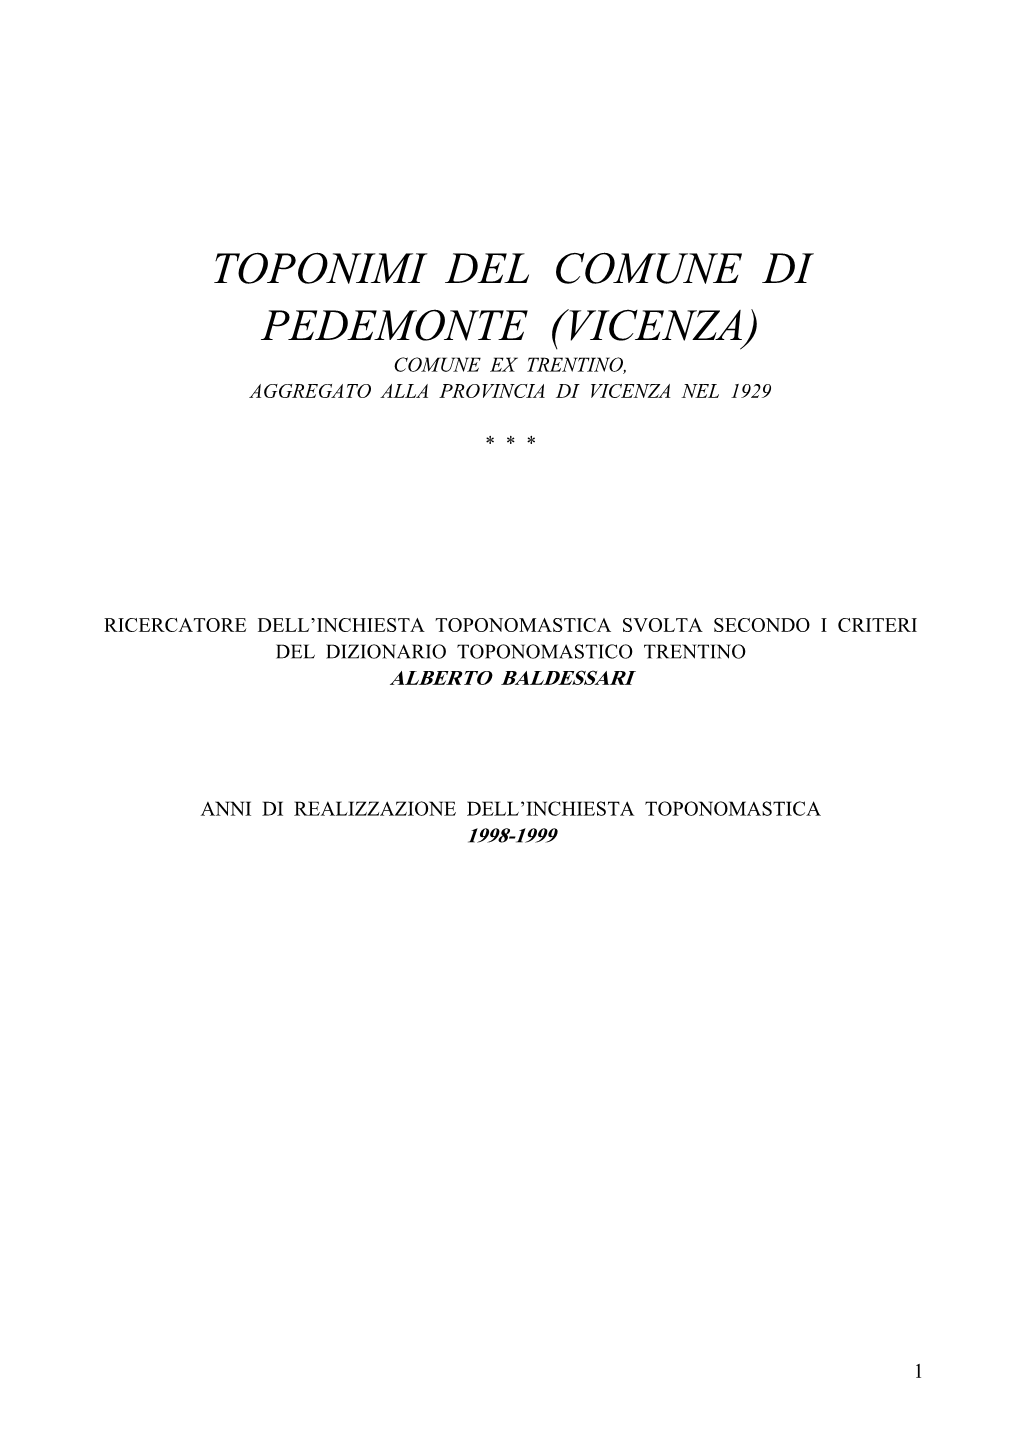 Toponimi Del Comune Di Pedemonte (Vicenza) Comune Ex Trentino, Aggregato Alla Provincia Di Vicenza Nel 1929